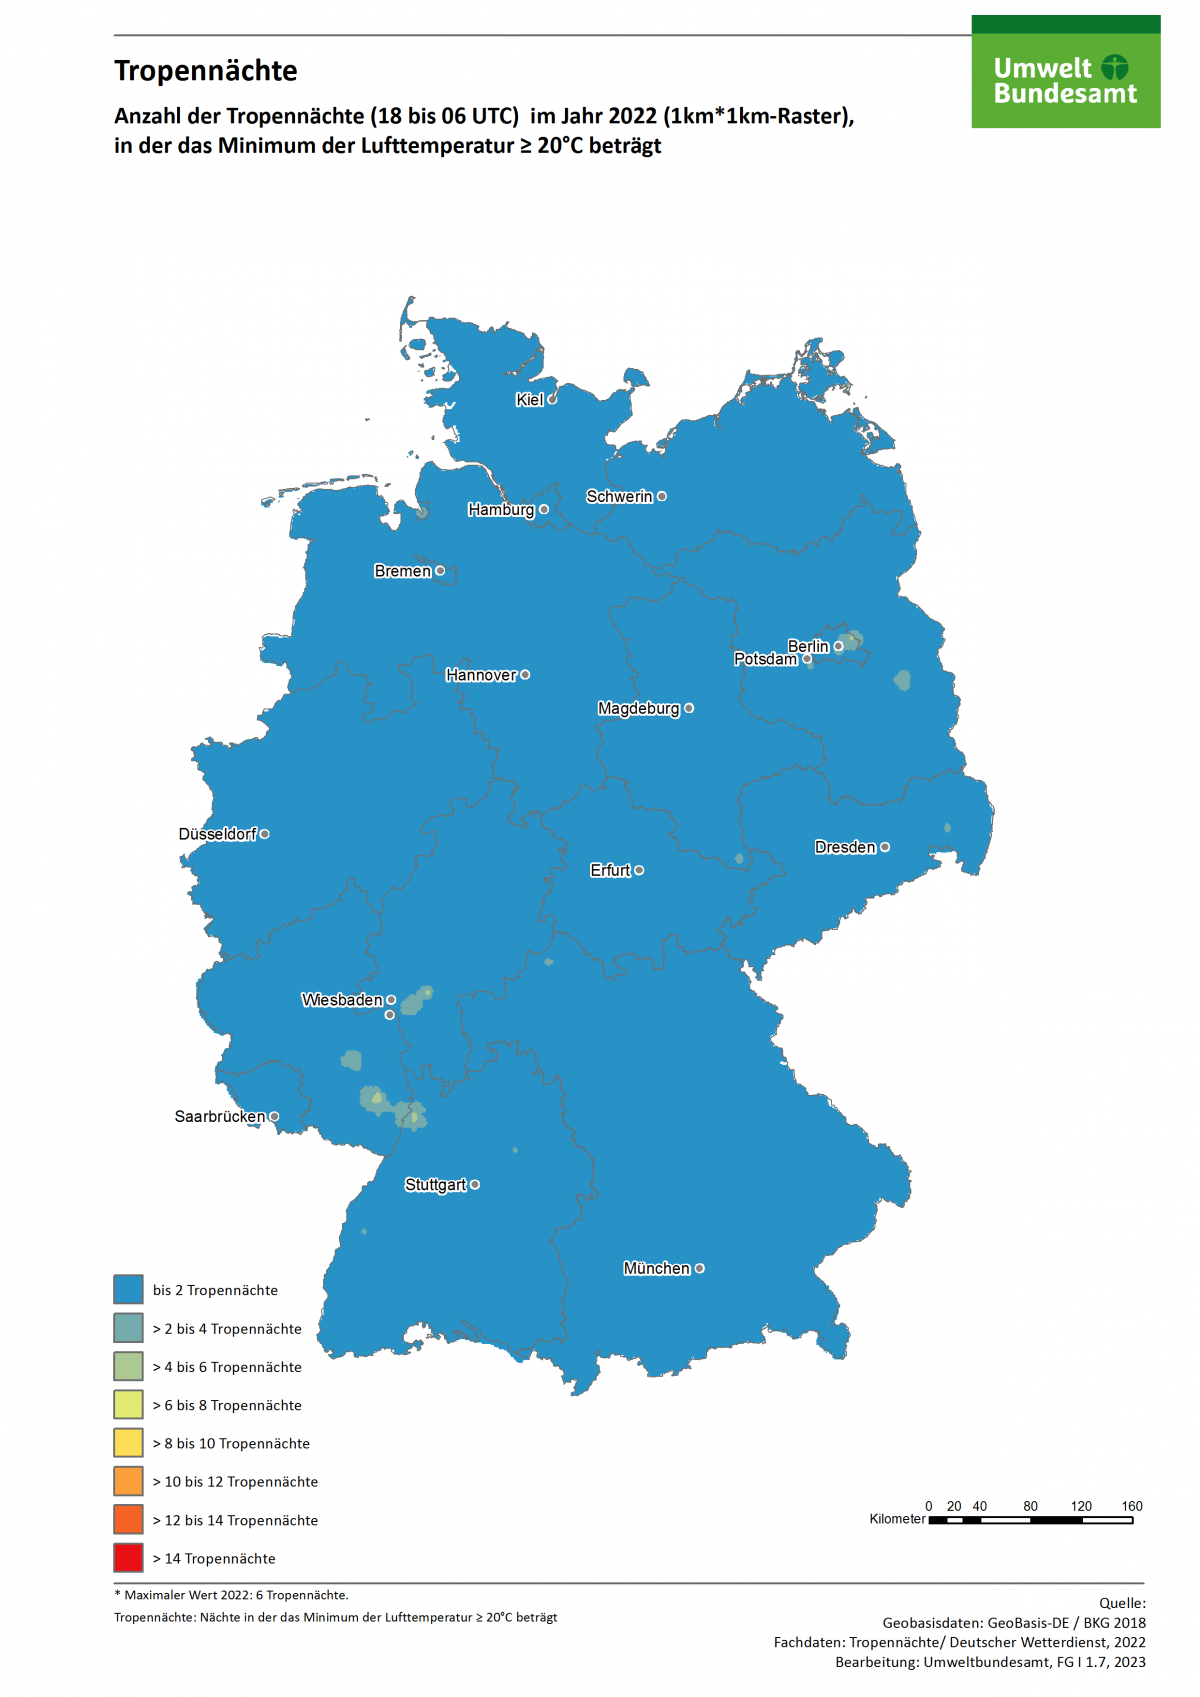 Die Karte zeigt die Anzahl der Tropennächte in Deutschland im Jahr 2022. In diesem Jahr gab es in einzelnen Regionen bis zu 9 Tropennächte.